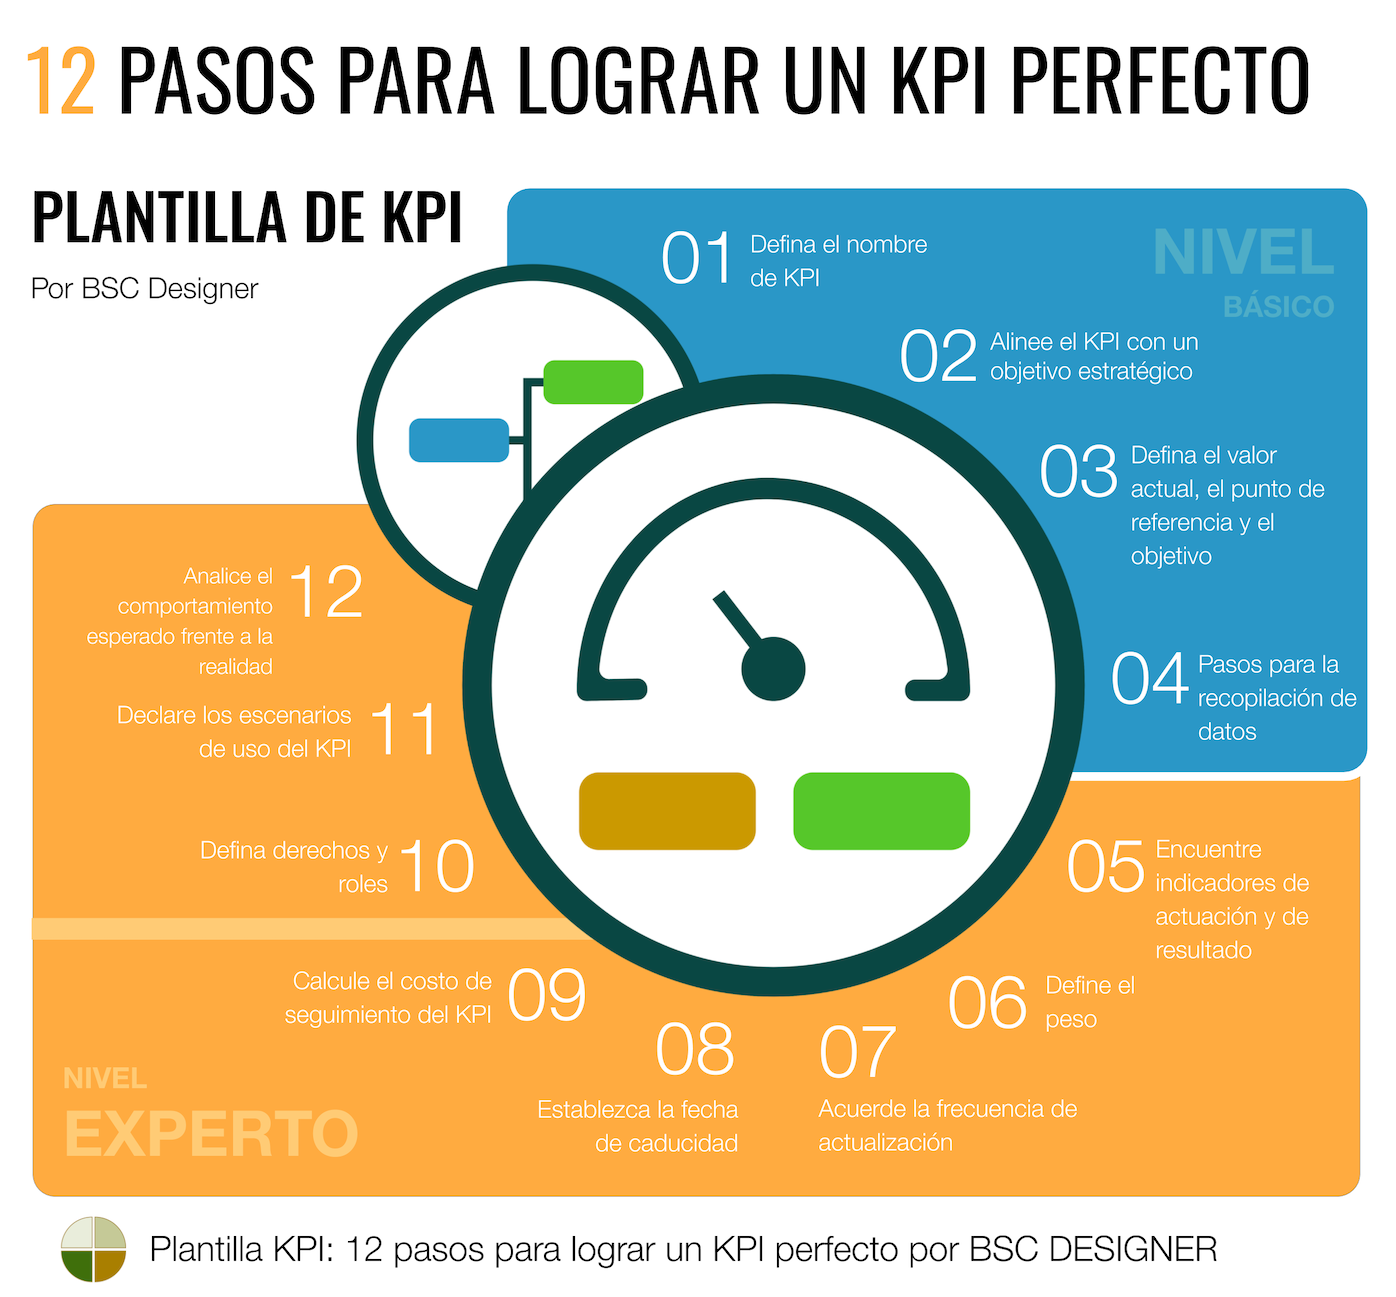 Plantilla de KPI: 12 pasos para lograr un KPI perfecto